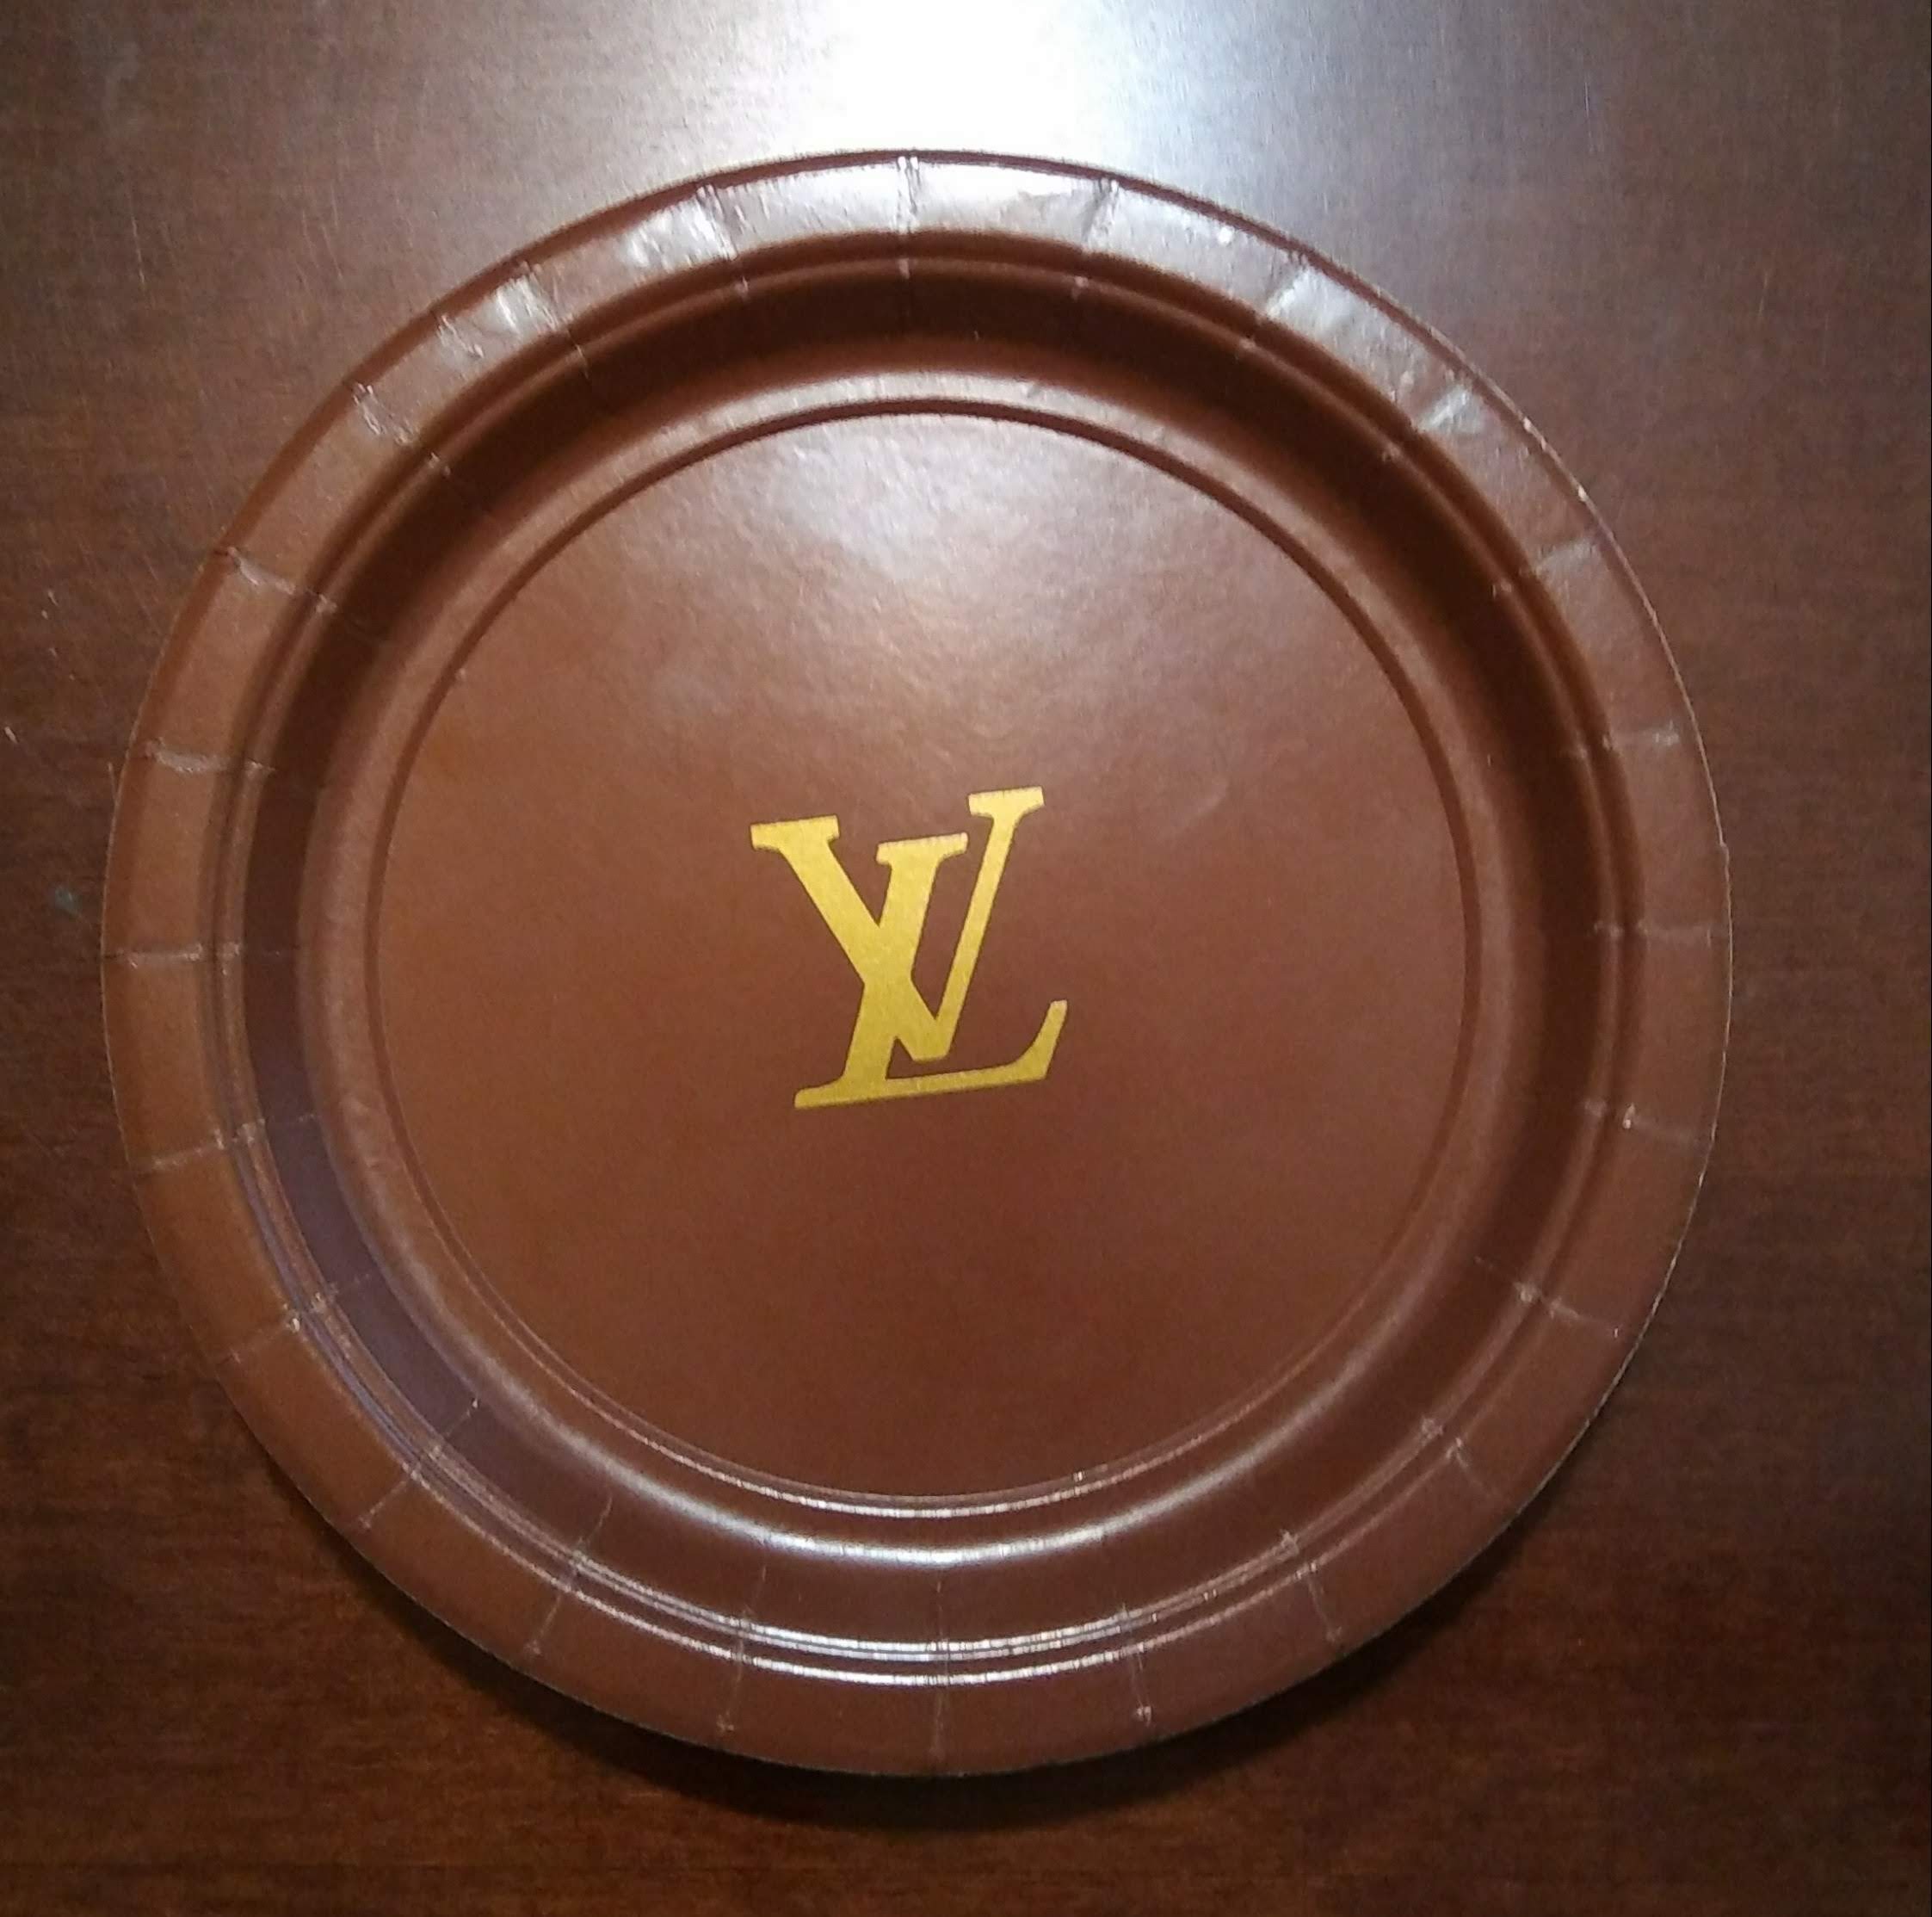 Louis Vuitton Plates 